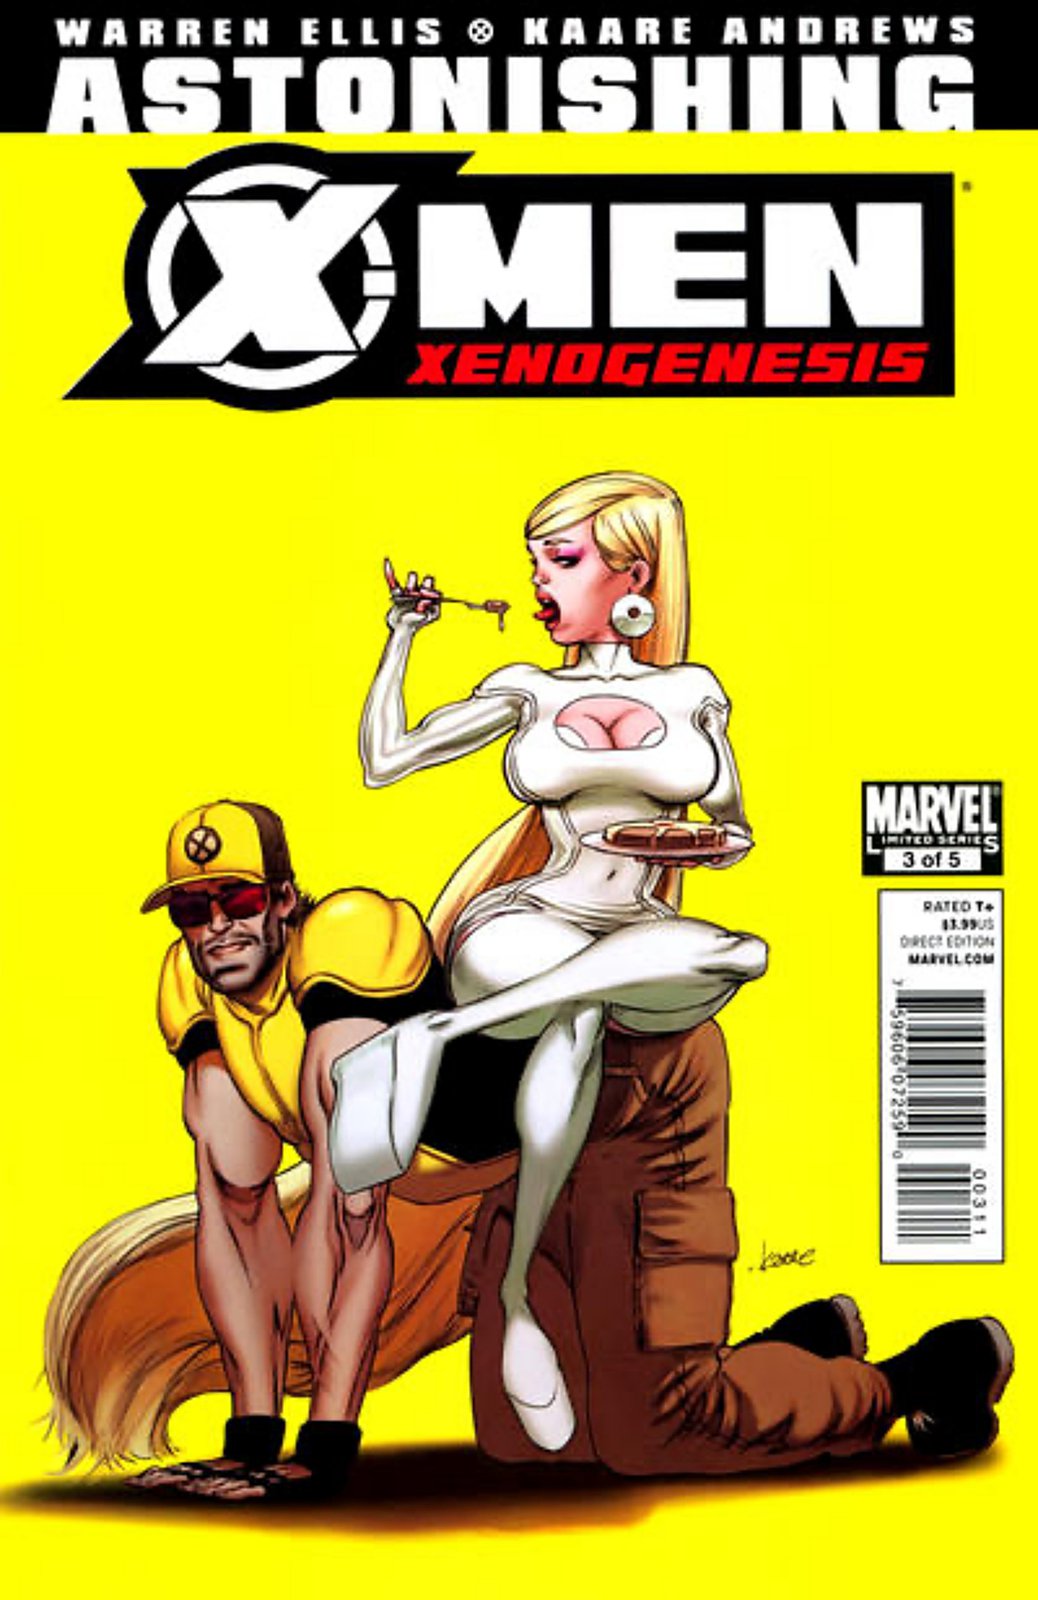 Astonishing X-Men: Xenogenesis #3 (2010-2011) Marvel Comics